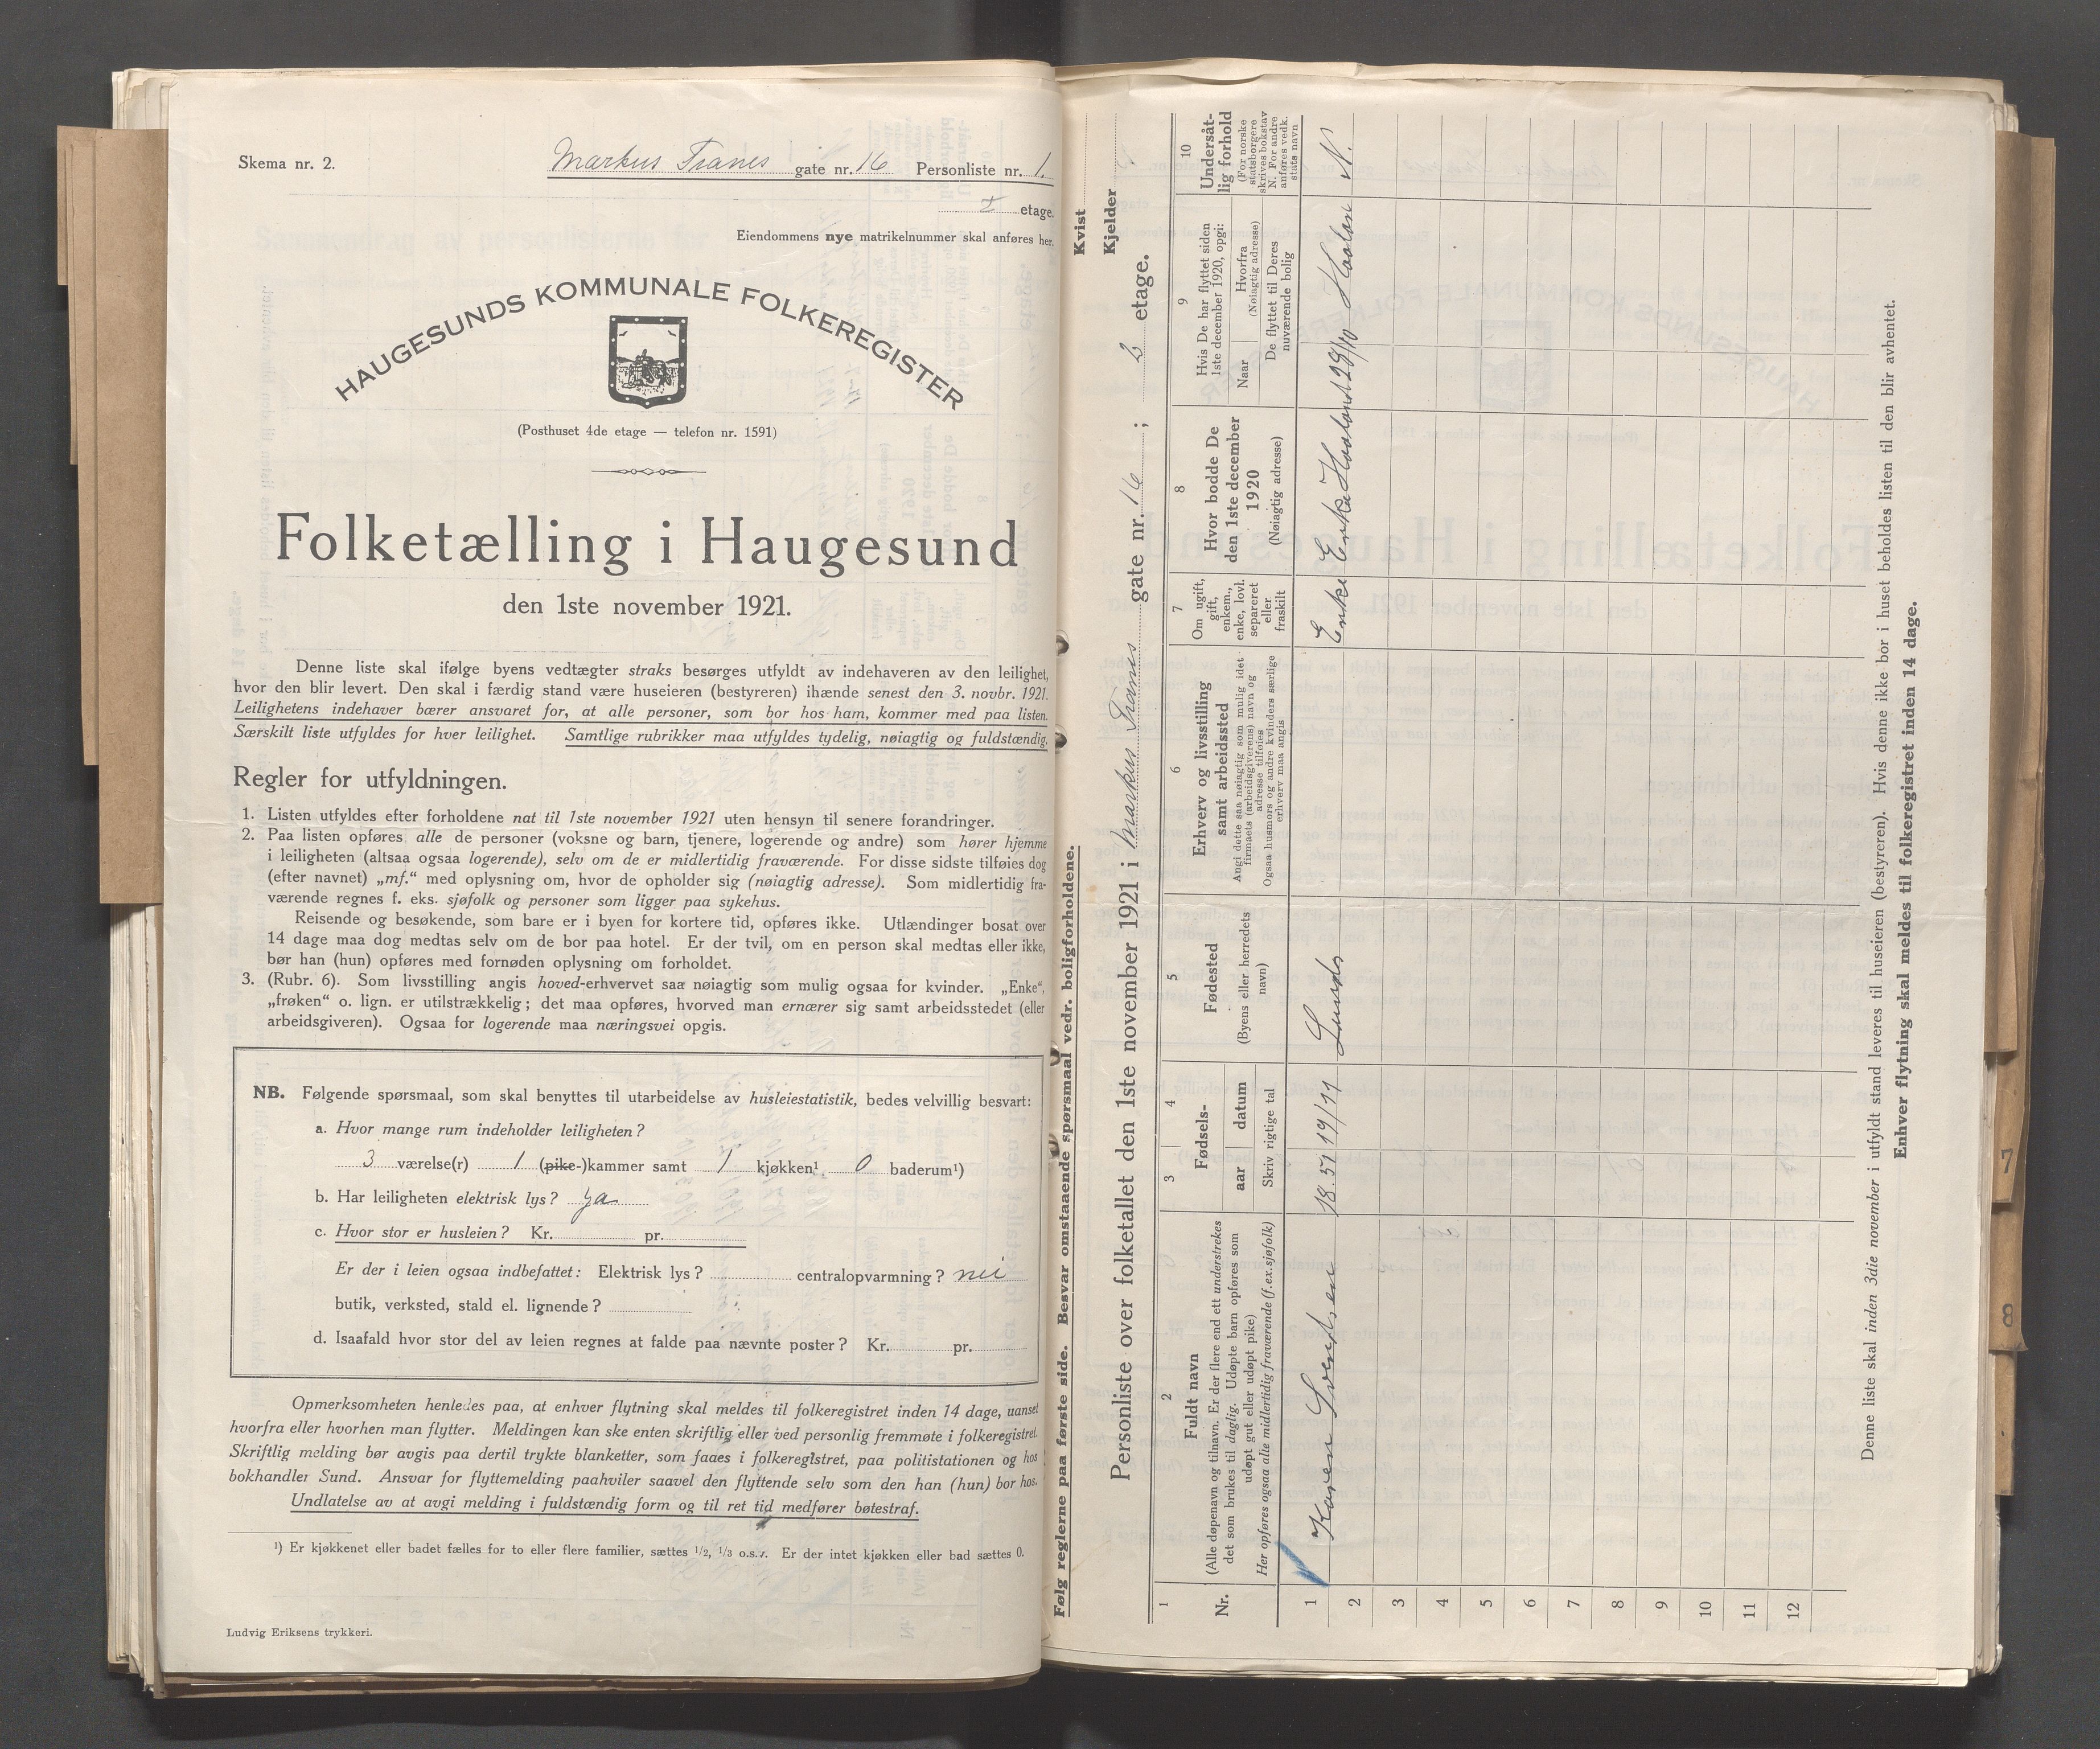 IKAR, Local census 1.11.1921 for Haugesund, 1921, p. 3062